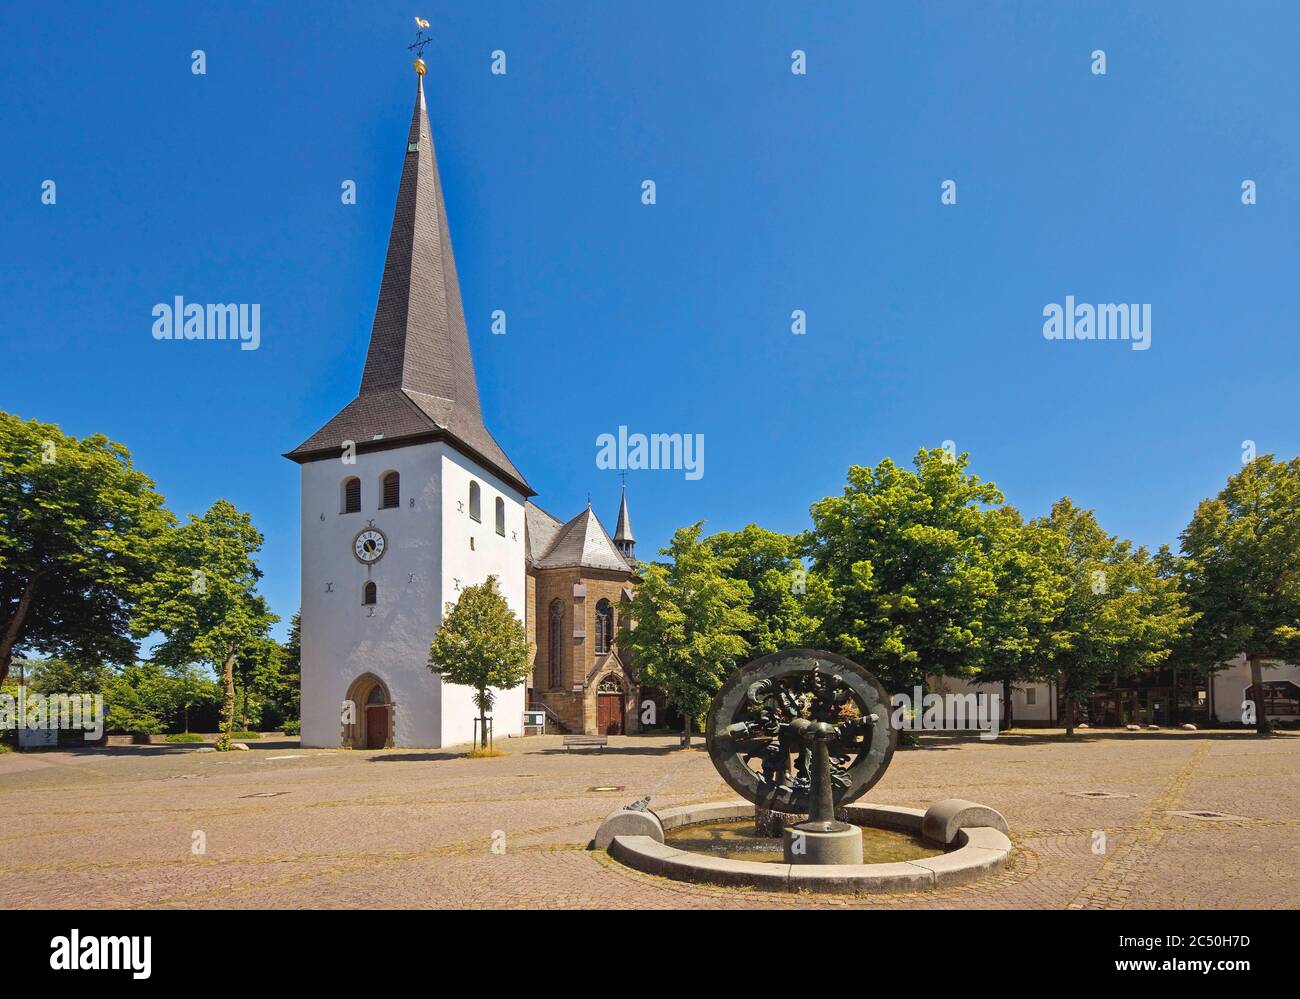 Place de l'église avec St, Petri Eglise et fontaine du marché à Huesten, Allemagne, Rhénanie-du-Nord-Westphalie, pays aigre, Arnsberg Banque D'Images